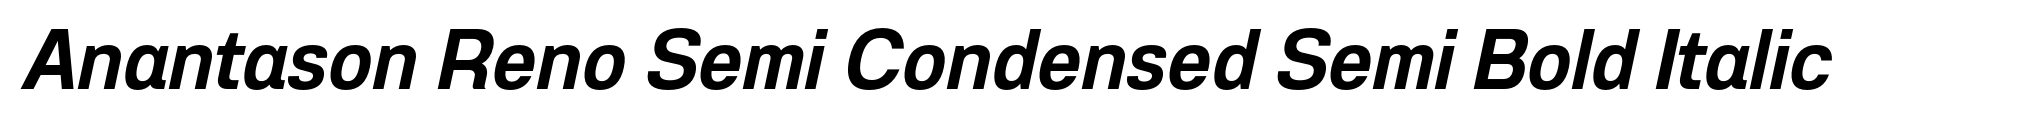 Anantason Reno Semi Condensed Semi Bold Italic image